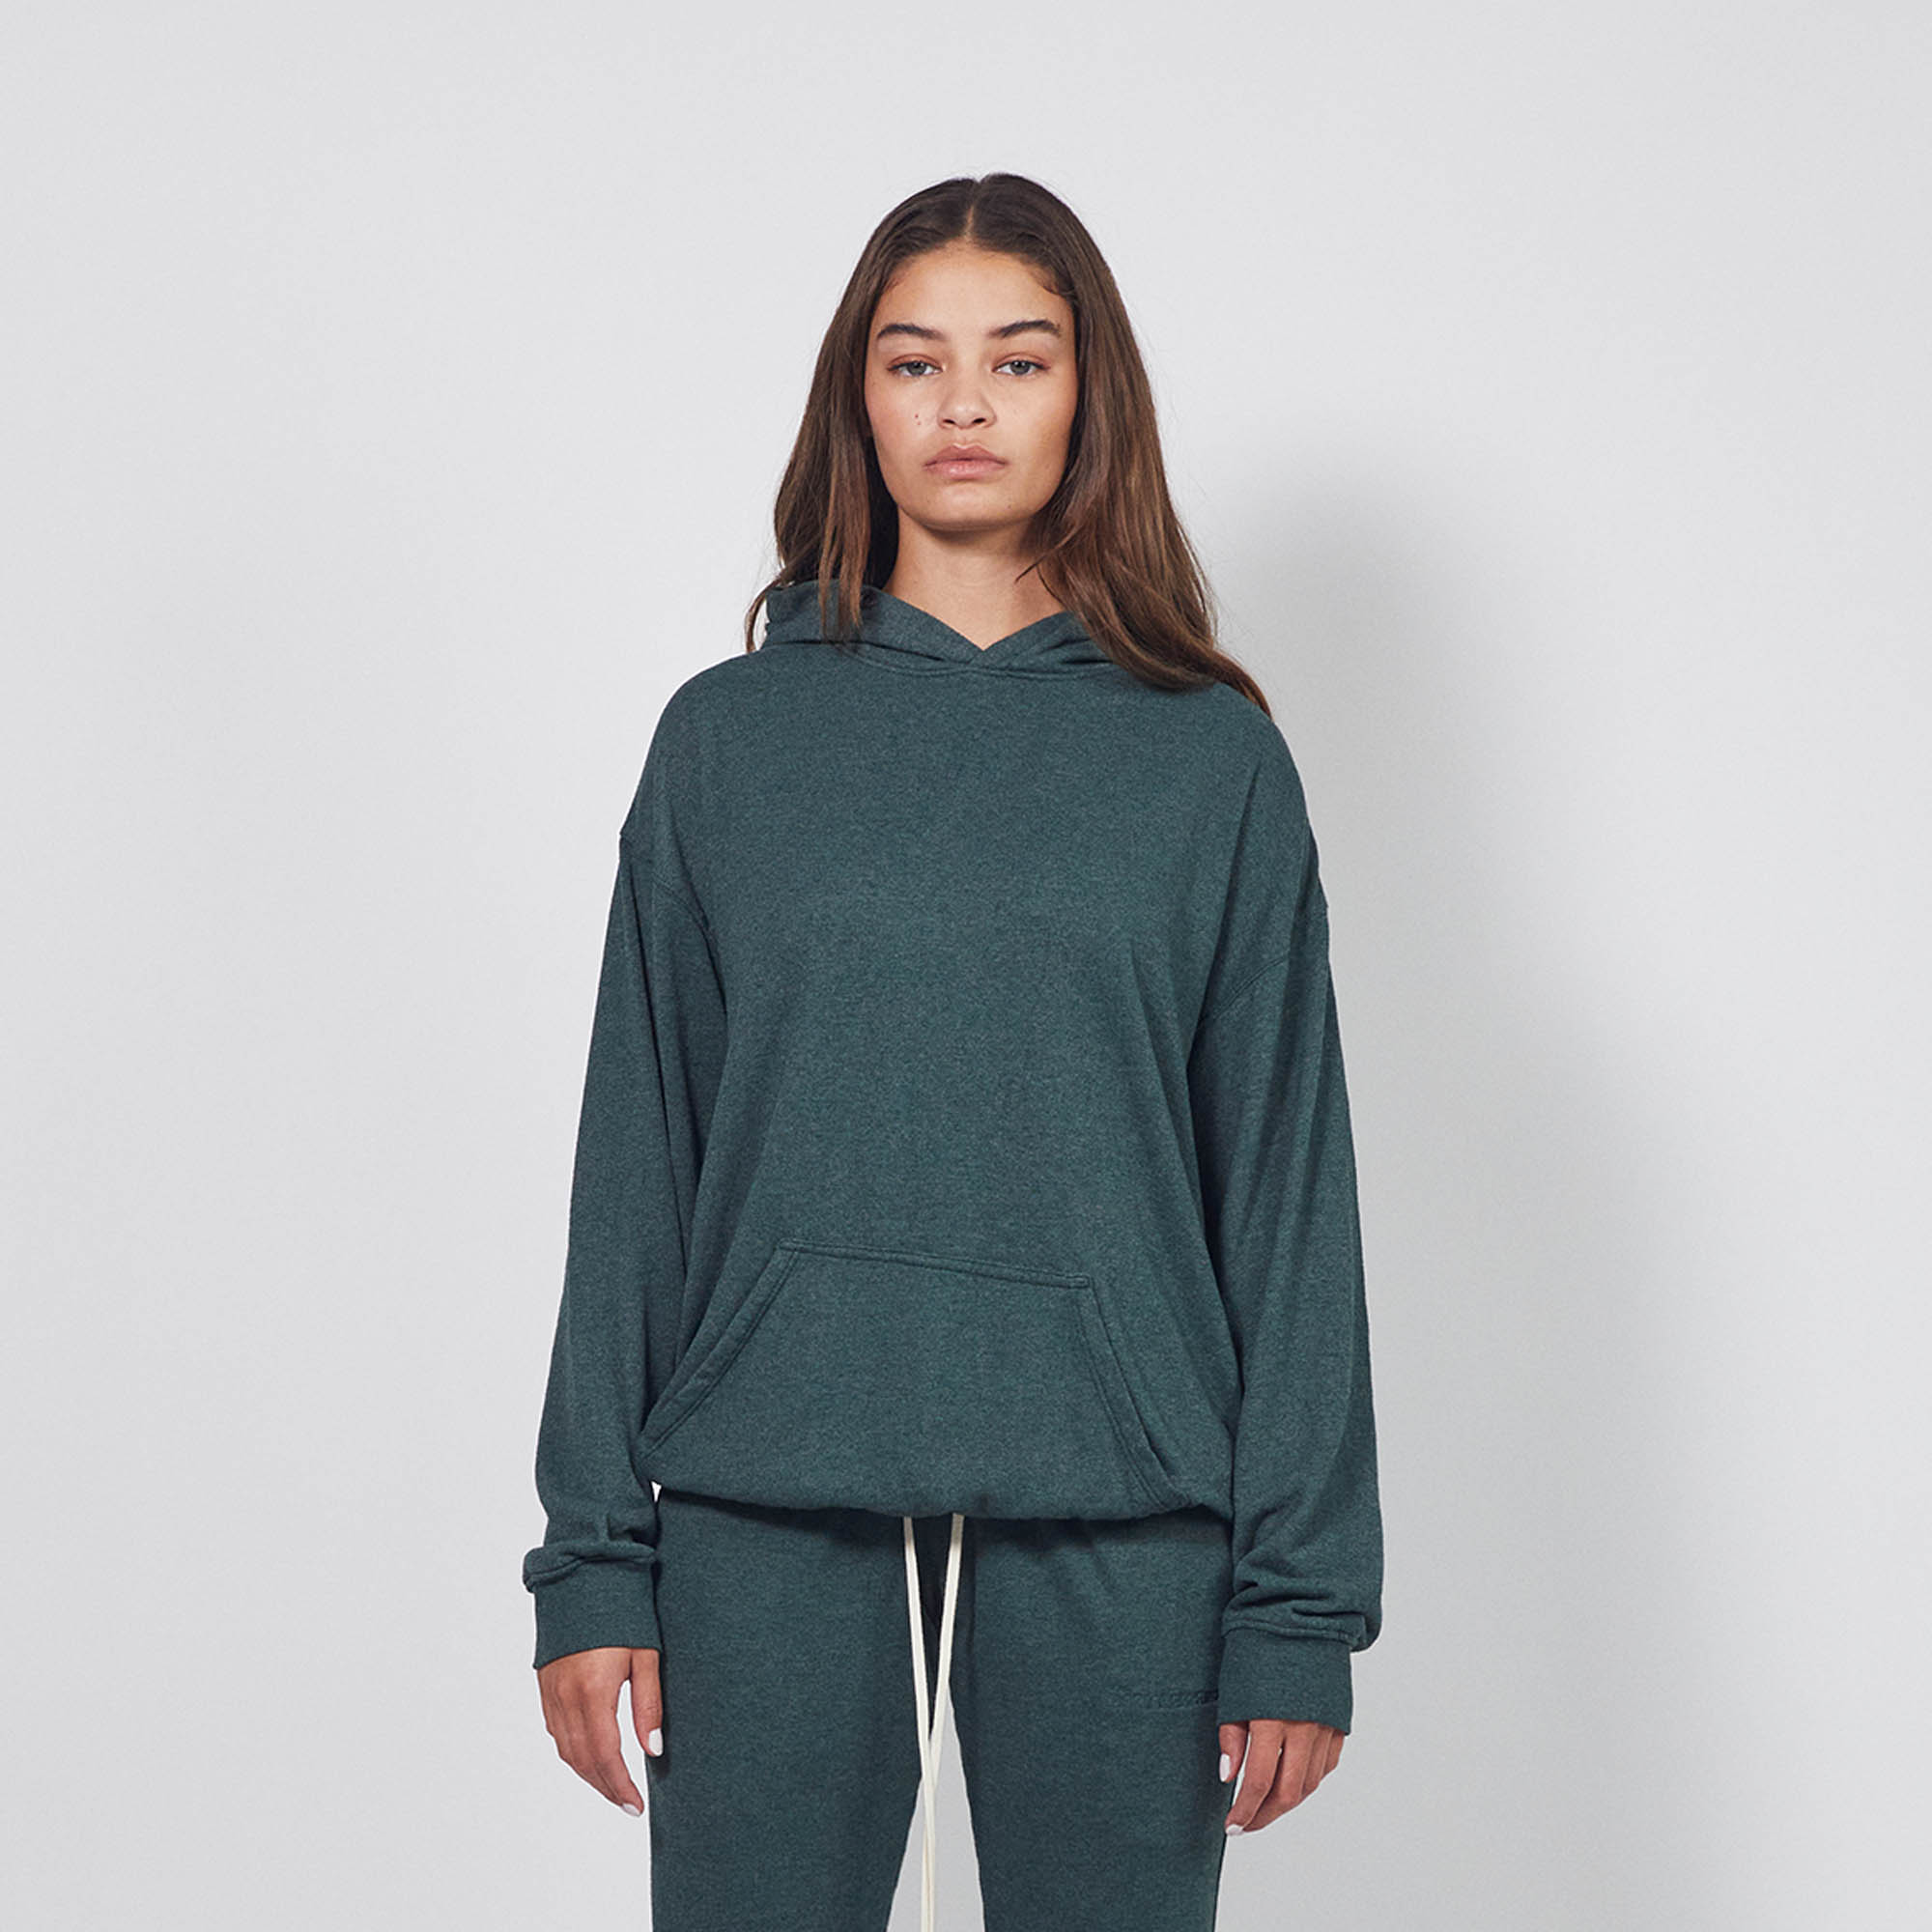 loop terry standard hoodie / hunter green